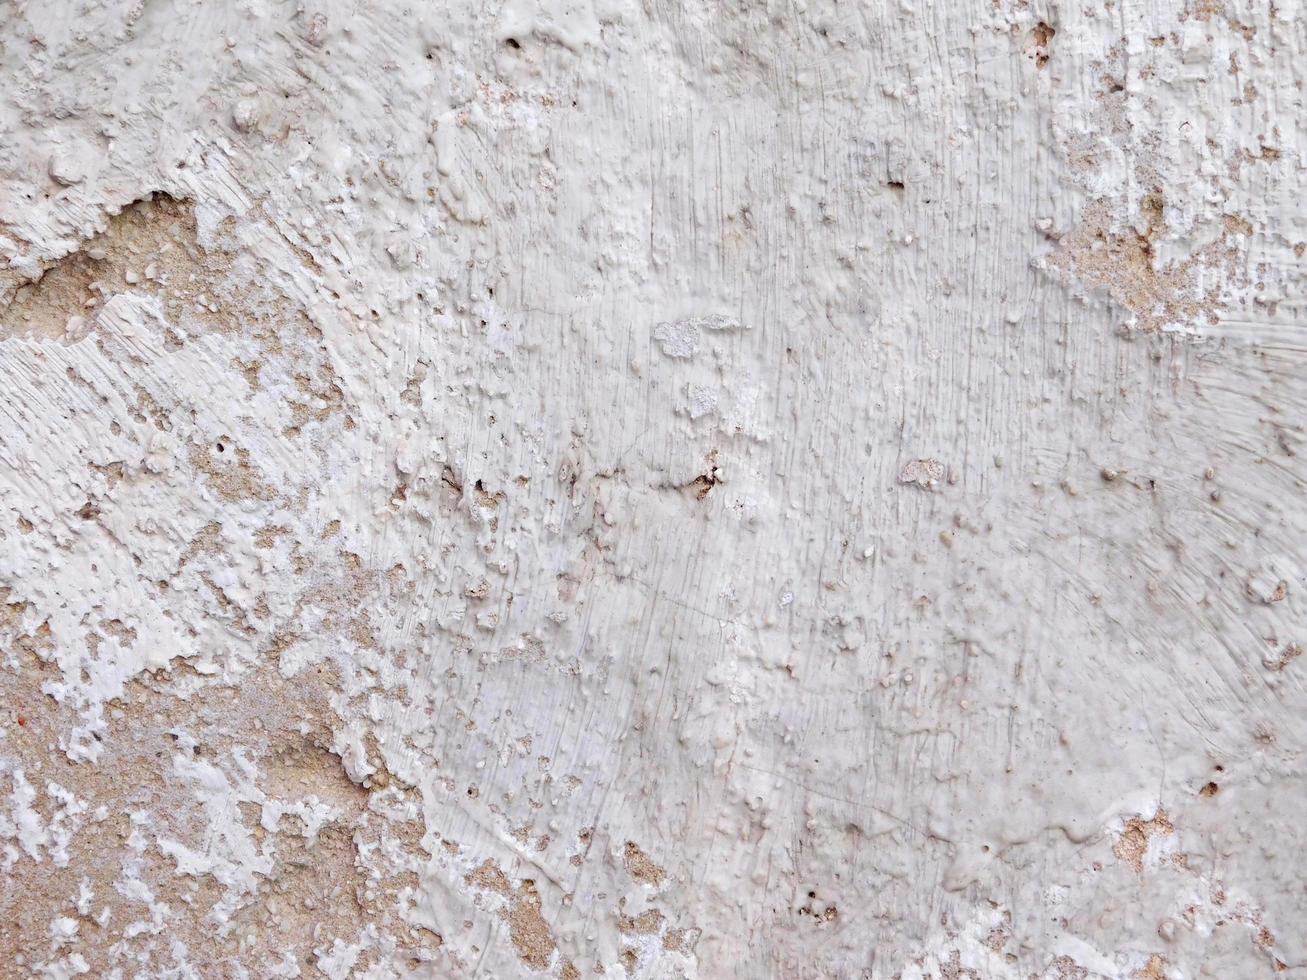 concreto cinza ou parede de cimento para plano de fundo ou textura foto